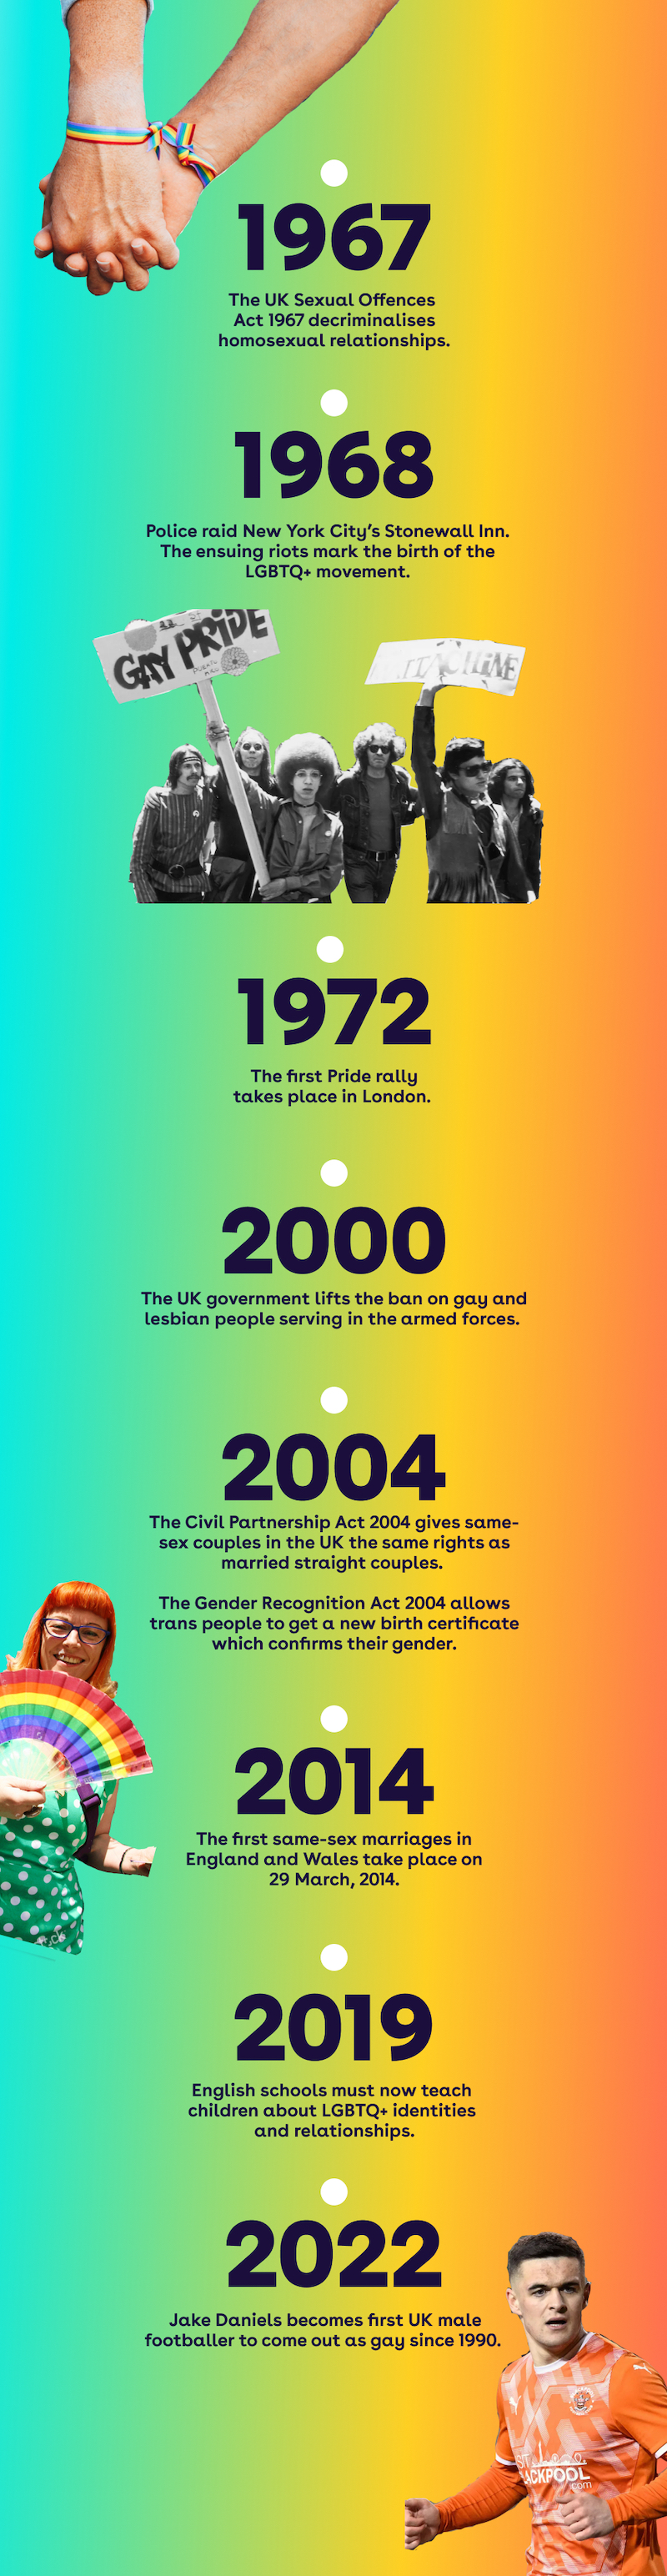 GoHenry Pride timeline 